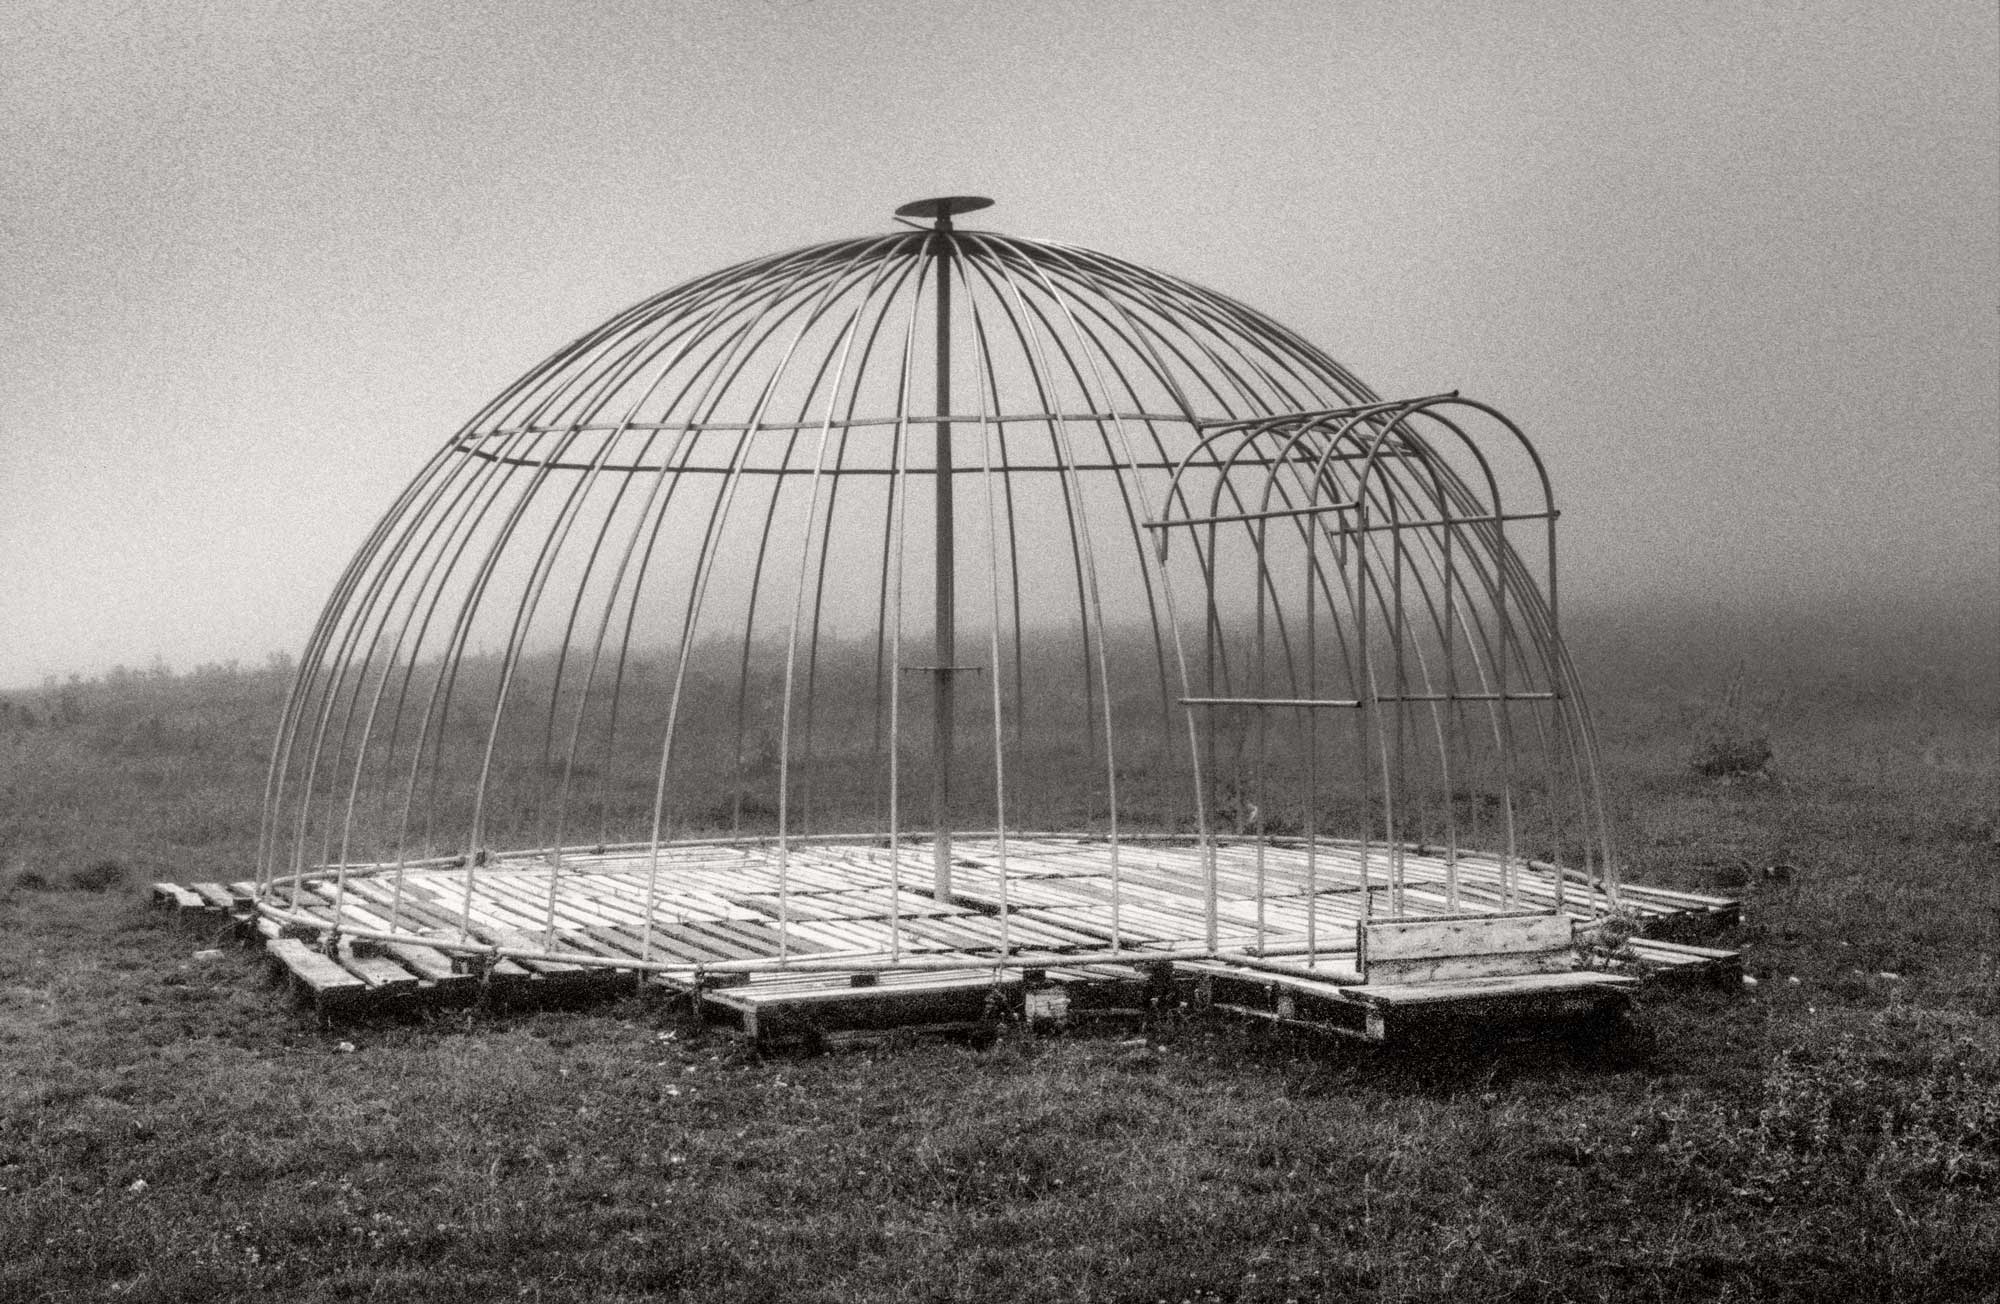 Cage, photographie présentée lors du Sepia Imaginarium de Bruno D'Alimonte